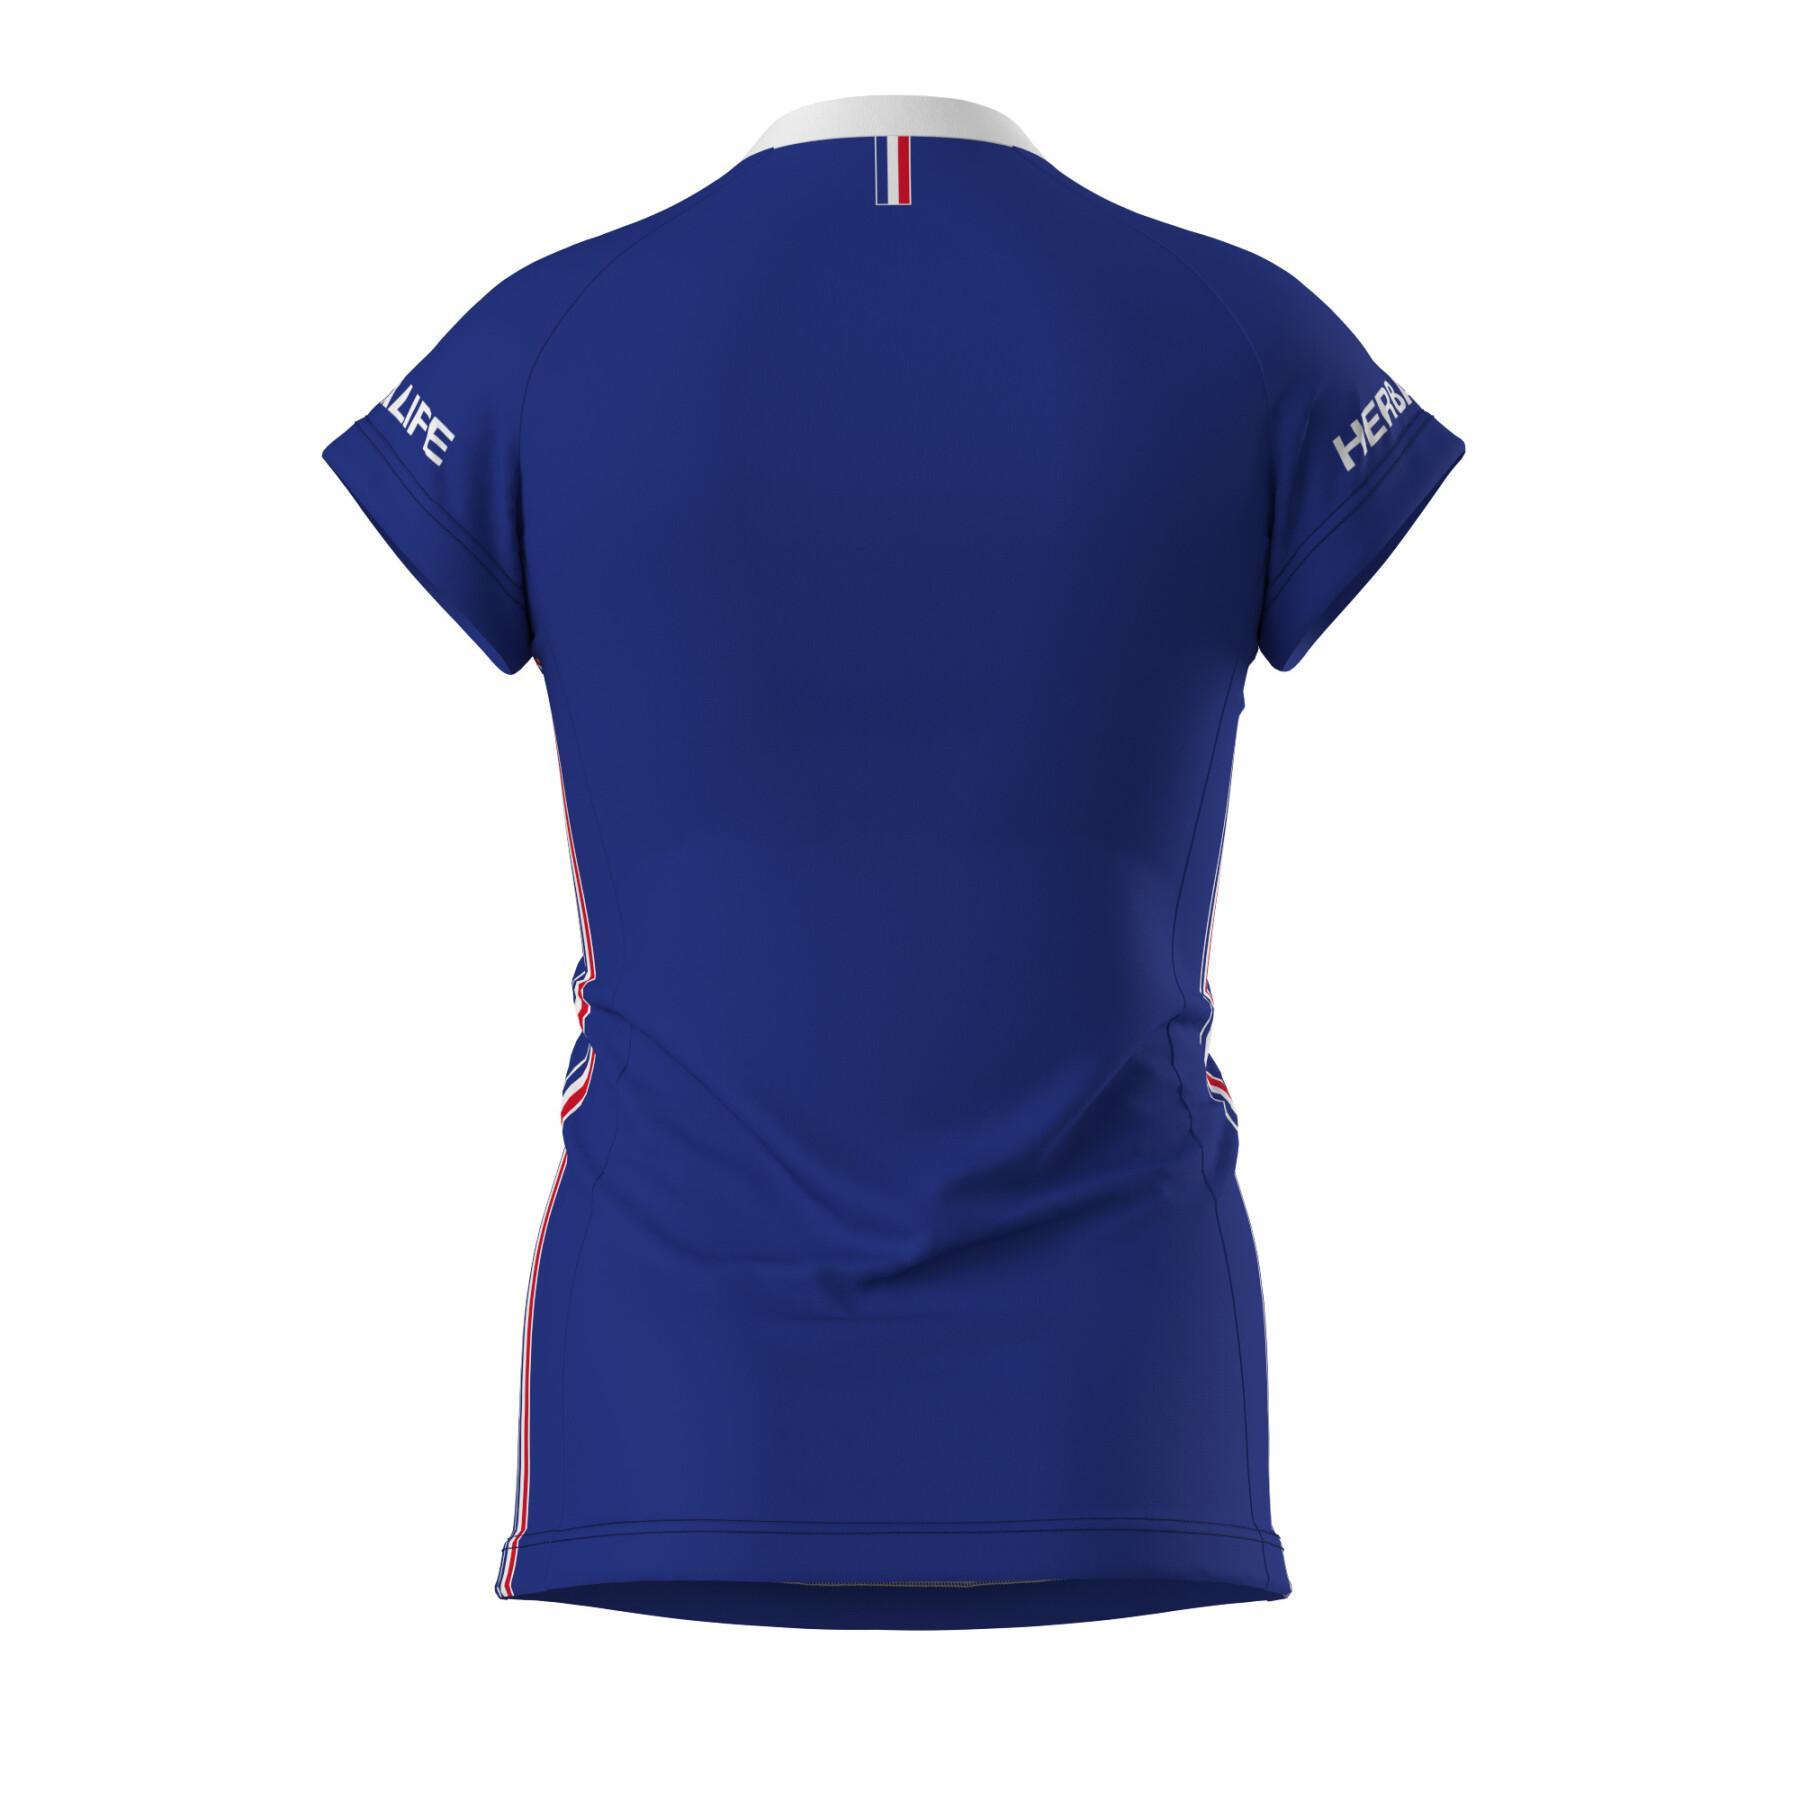 Camiseta oficial femenina de la selección FrancesaFrancia 2023